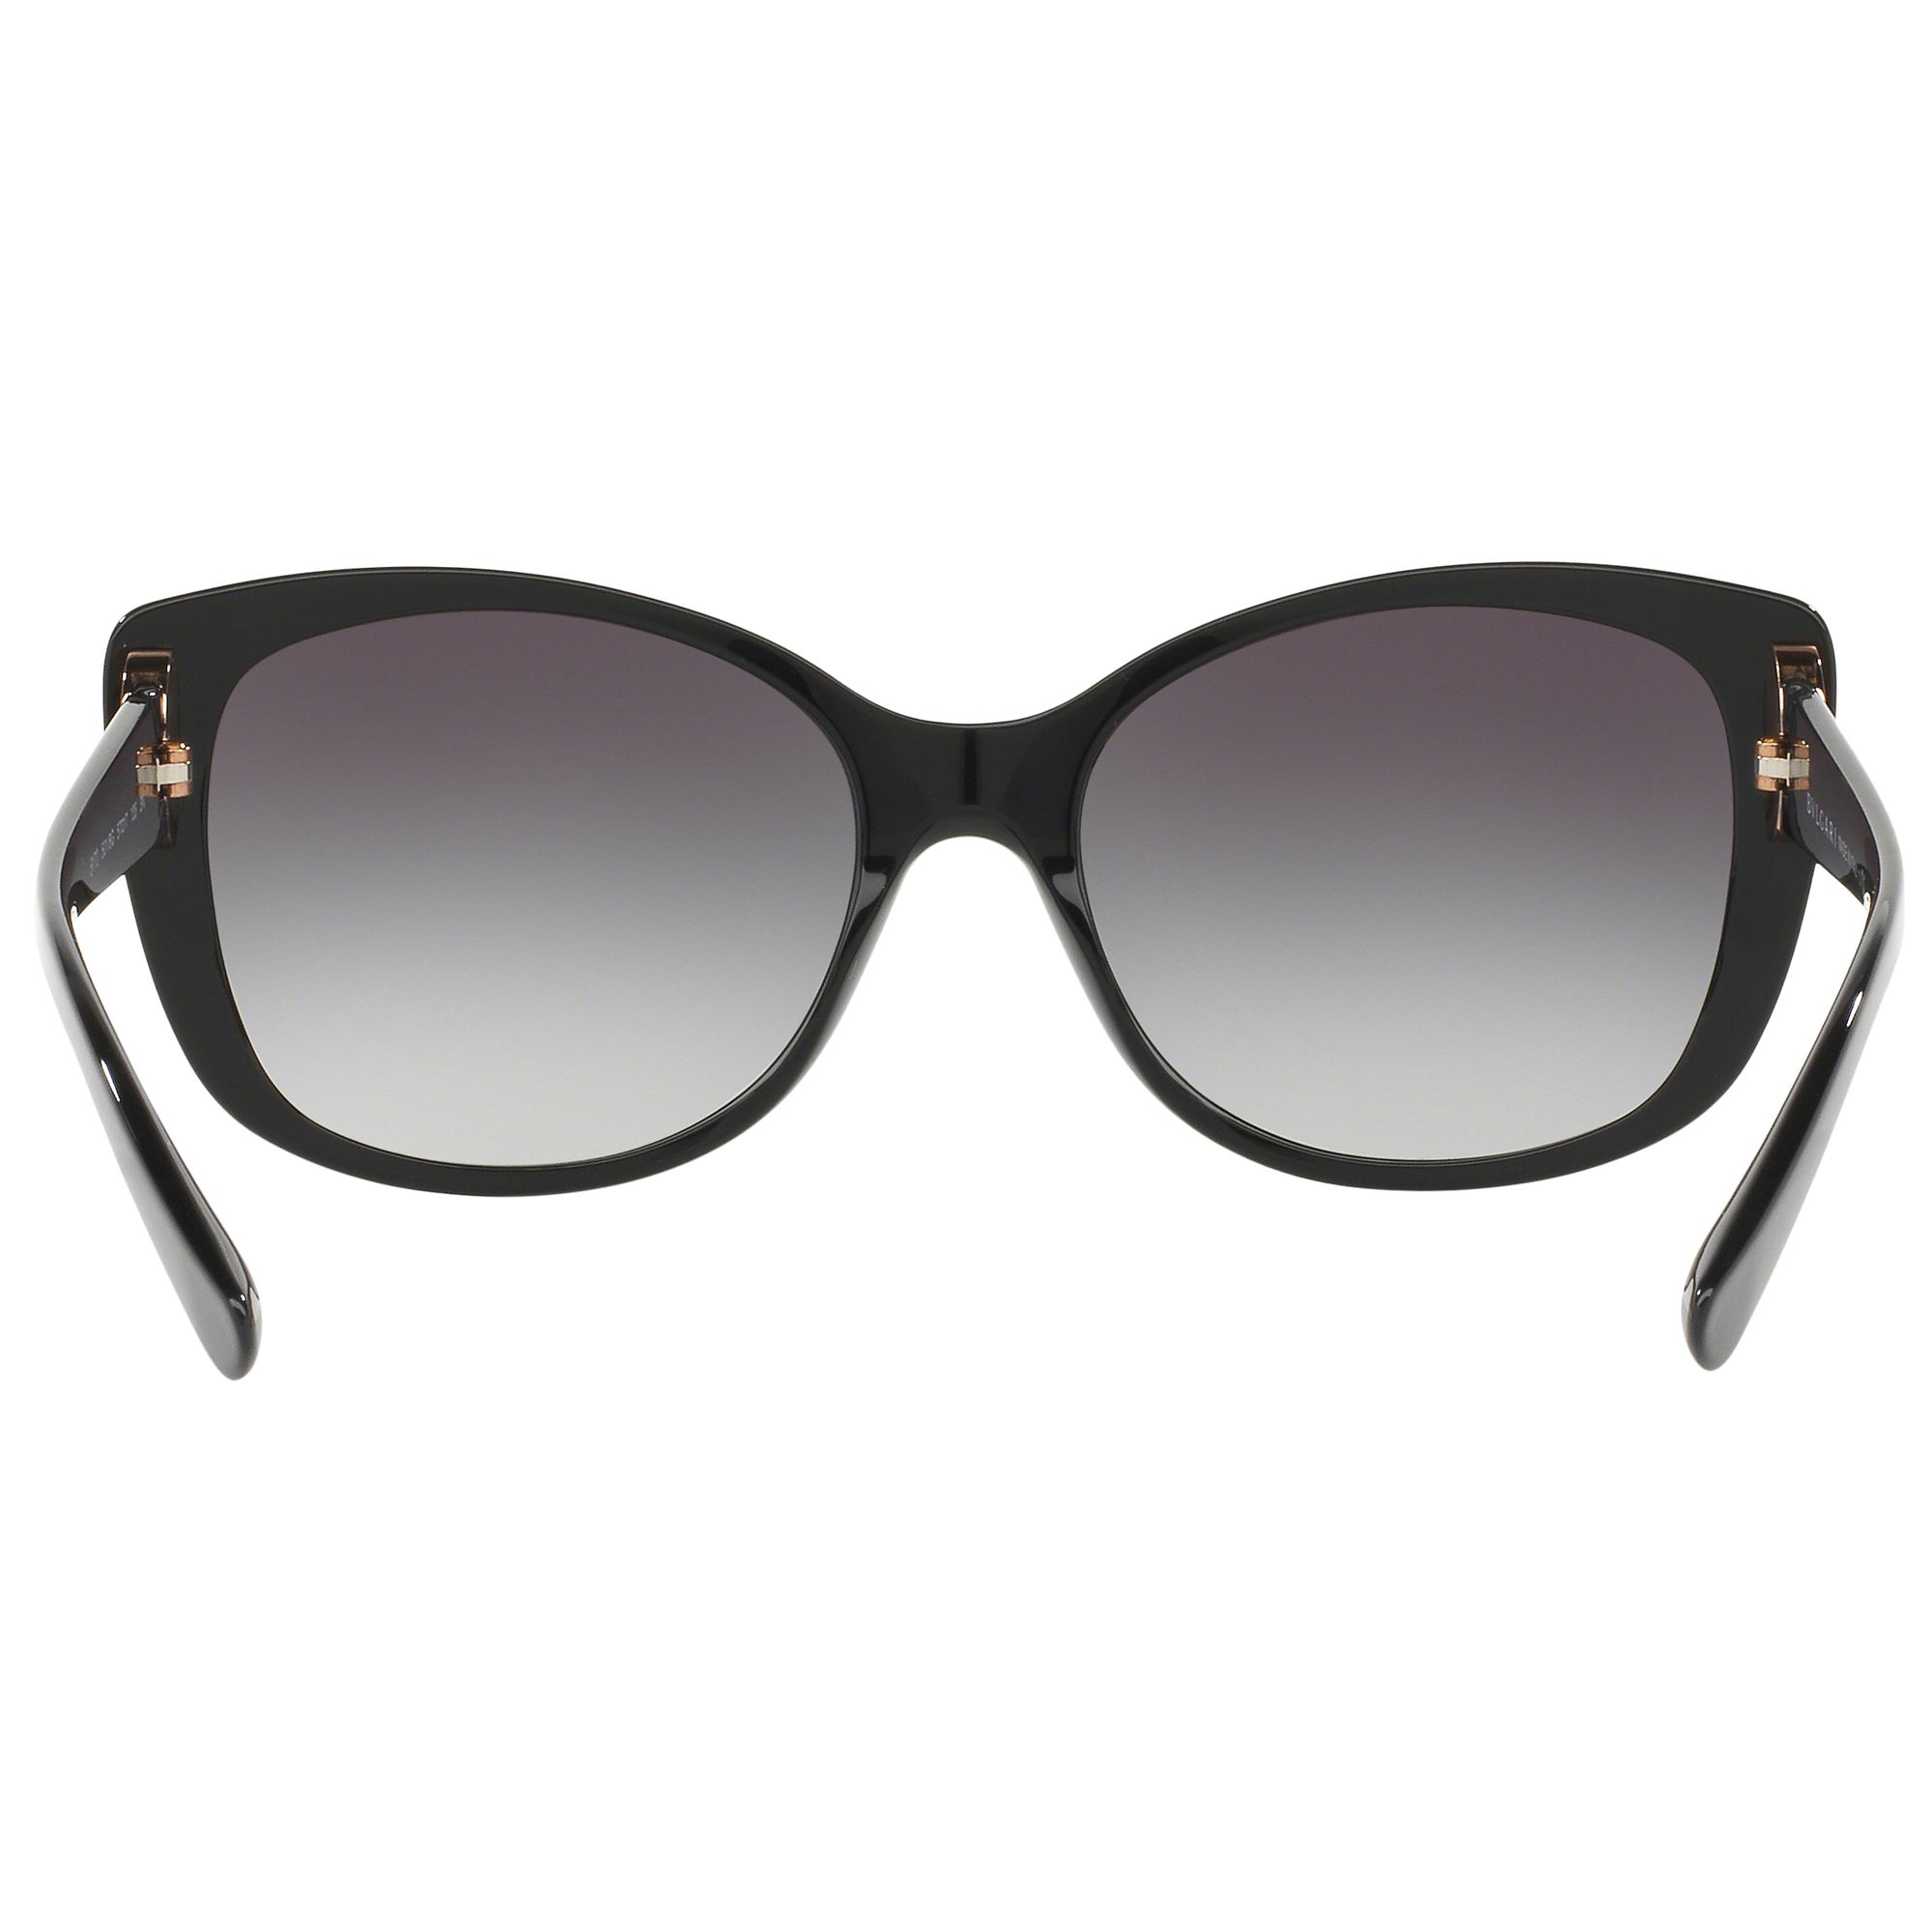 BVLGARI BV8170 Cat's Eye Framed Sunglasses at John Lewis & Partners